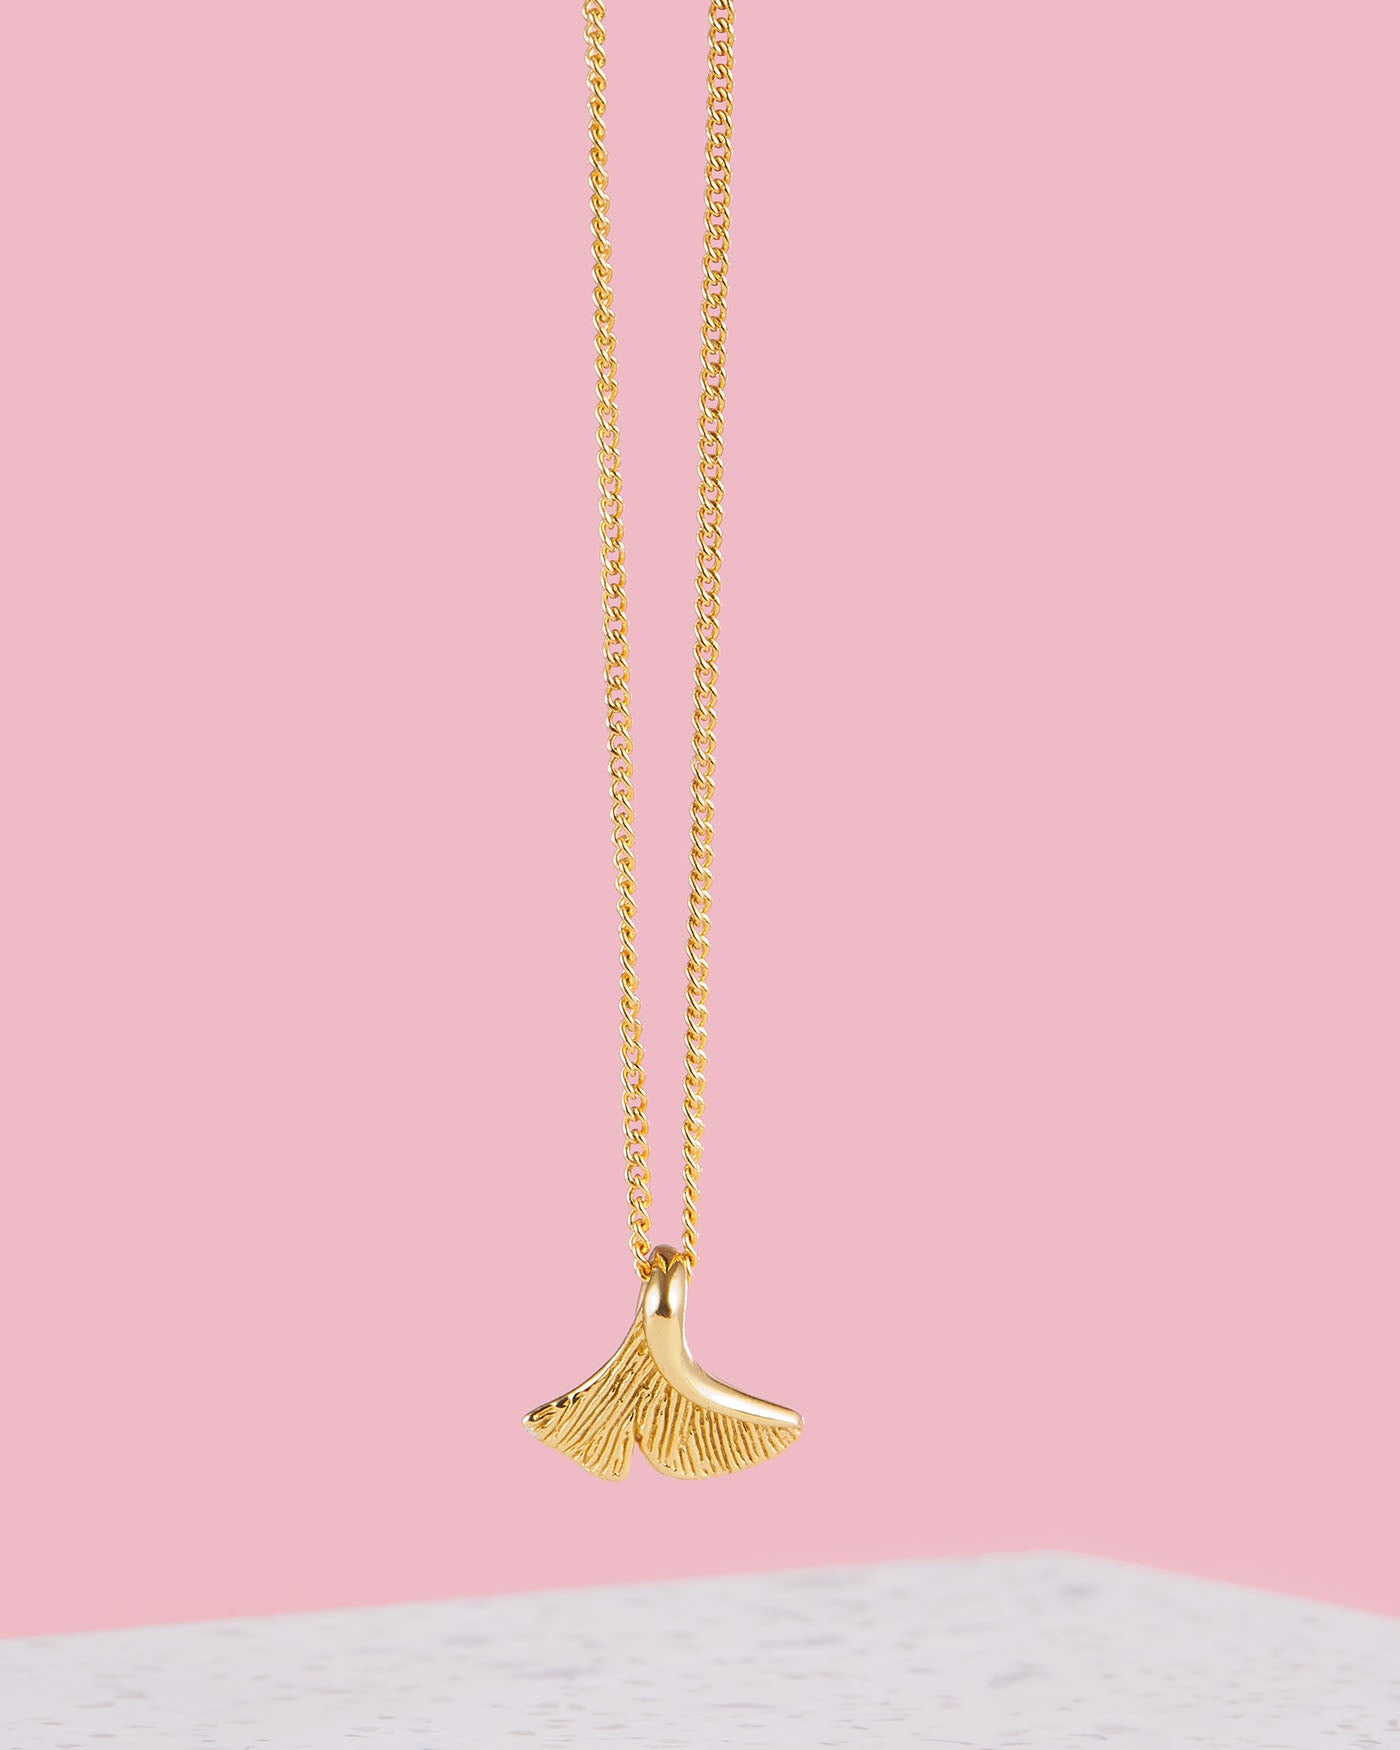 Ginkgo Kette gold | Kette mit Ginkgo Blatt | VERLAN Jewellery | Handgemachter Schmuck aus Bali | kreatives Geschenk für Freundin